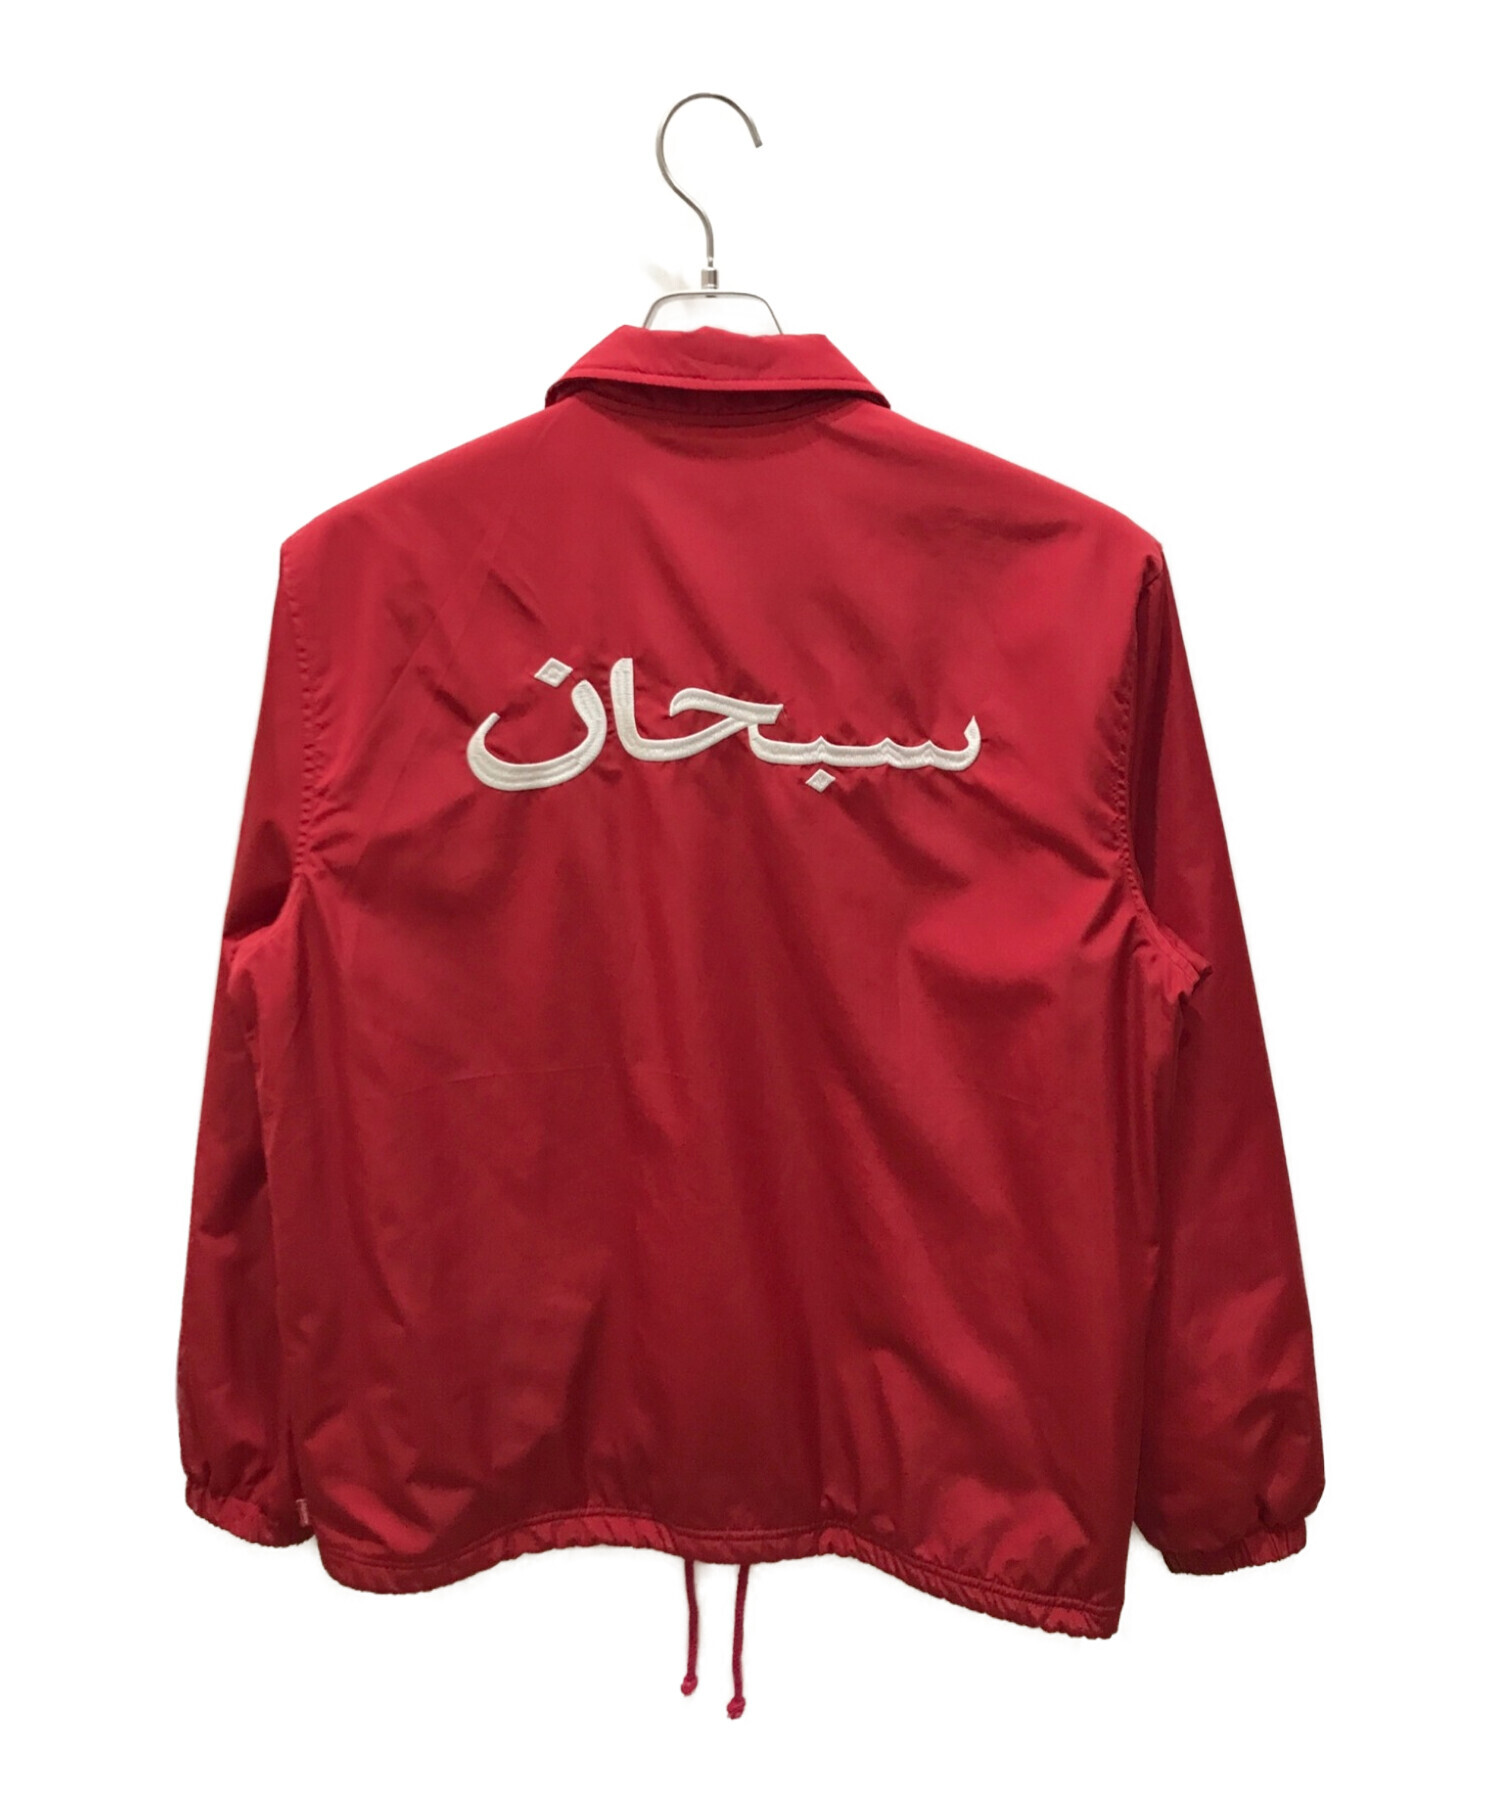 Supreme (シュプリーム) Arabic Logo Coaches Jacket/ アラビックロゴコーチジャケット レッド サイズ:M